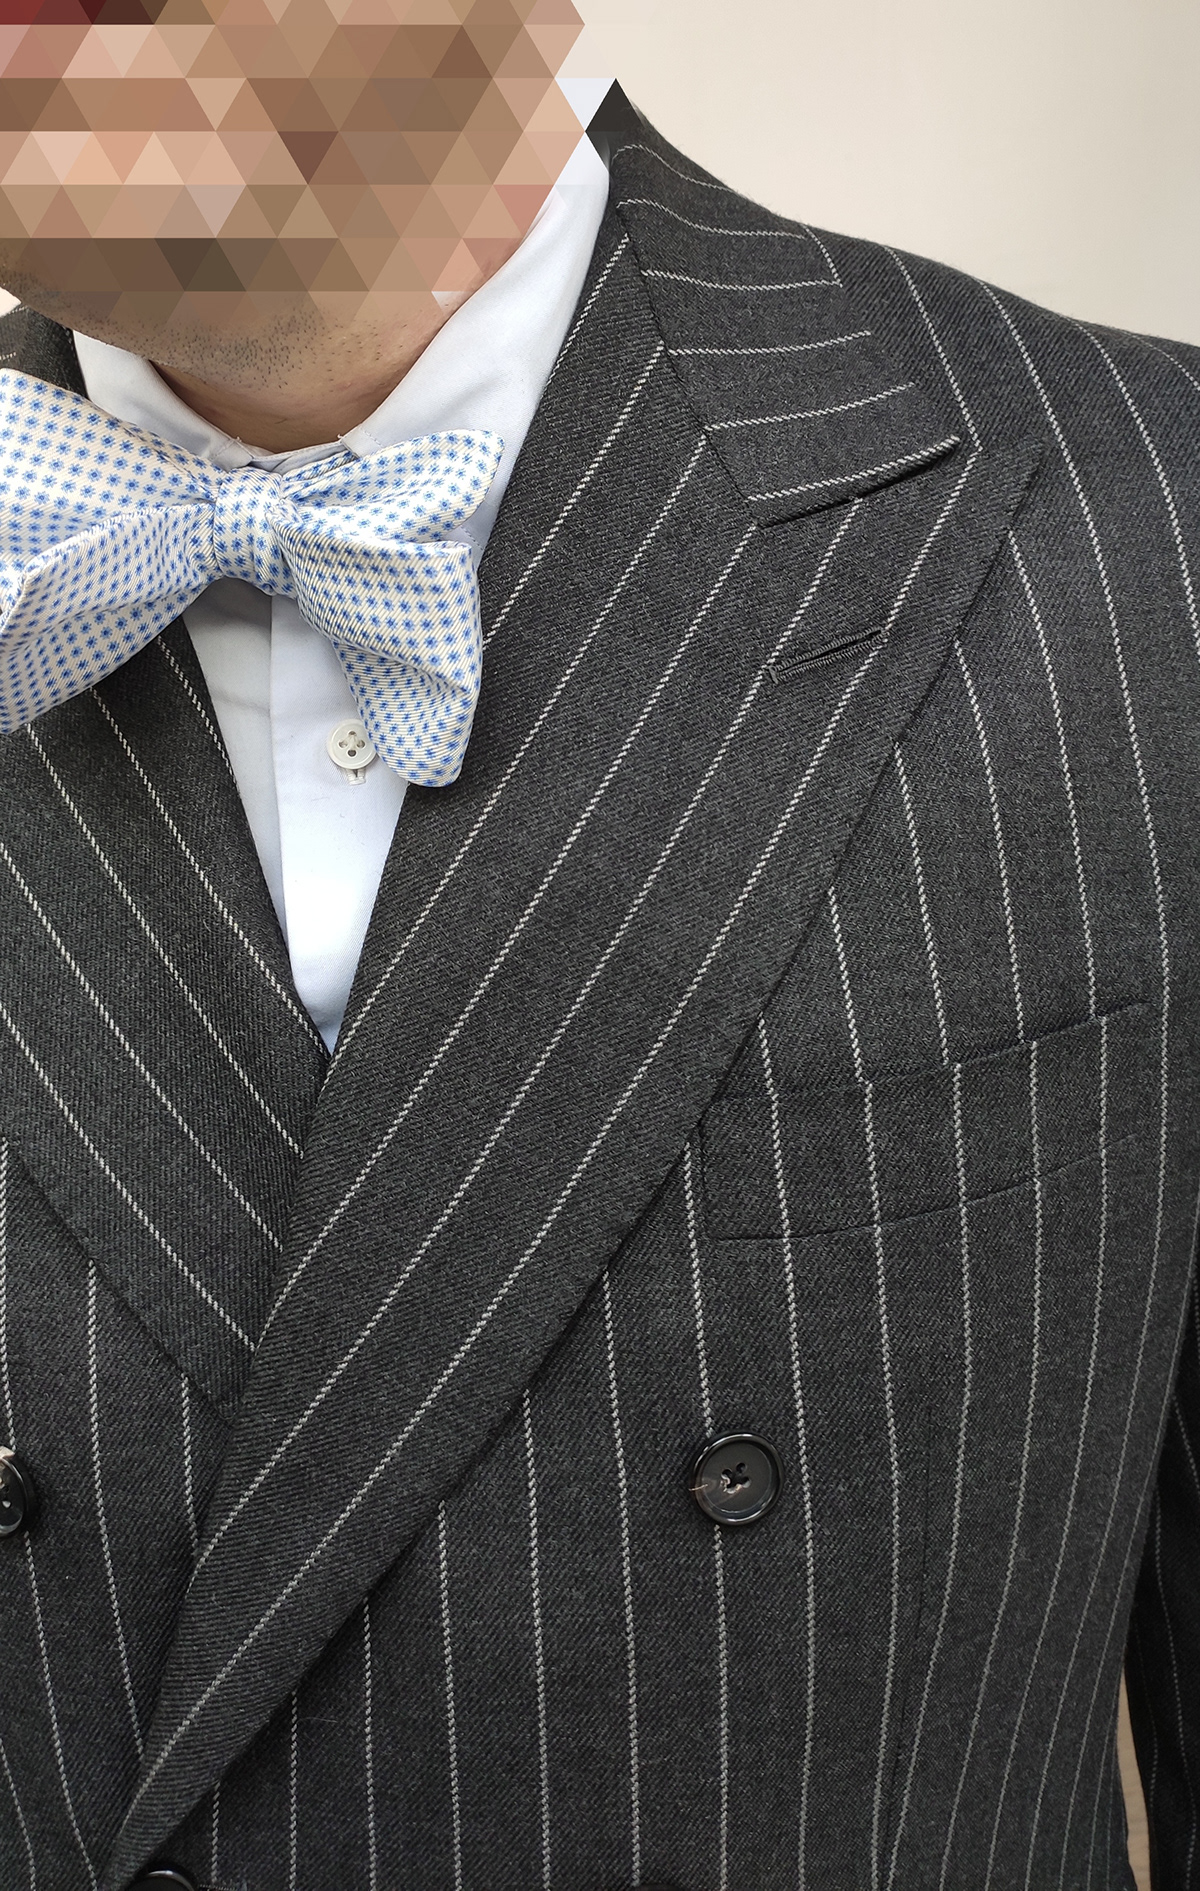 bespoke bespoke tailoring men's fashion Menswear Pattern cutting savile row suit tailoring